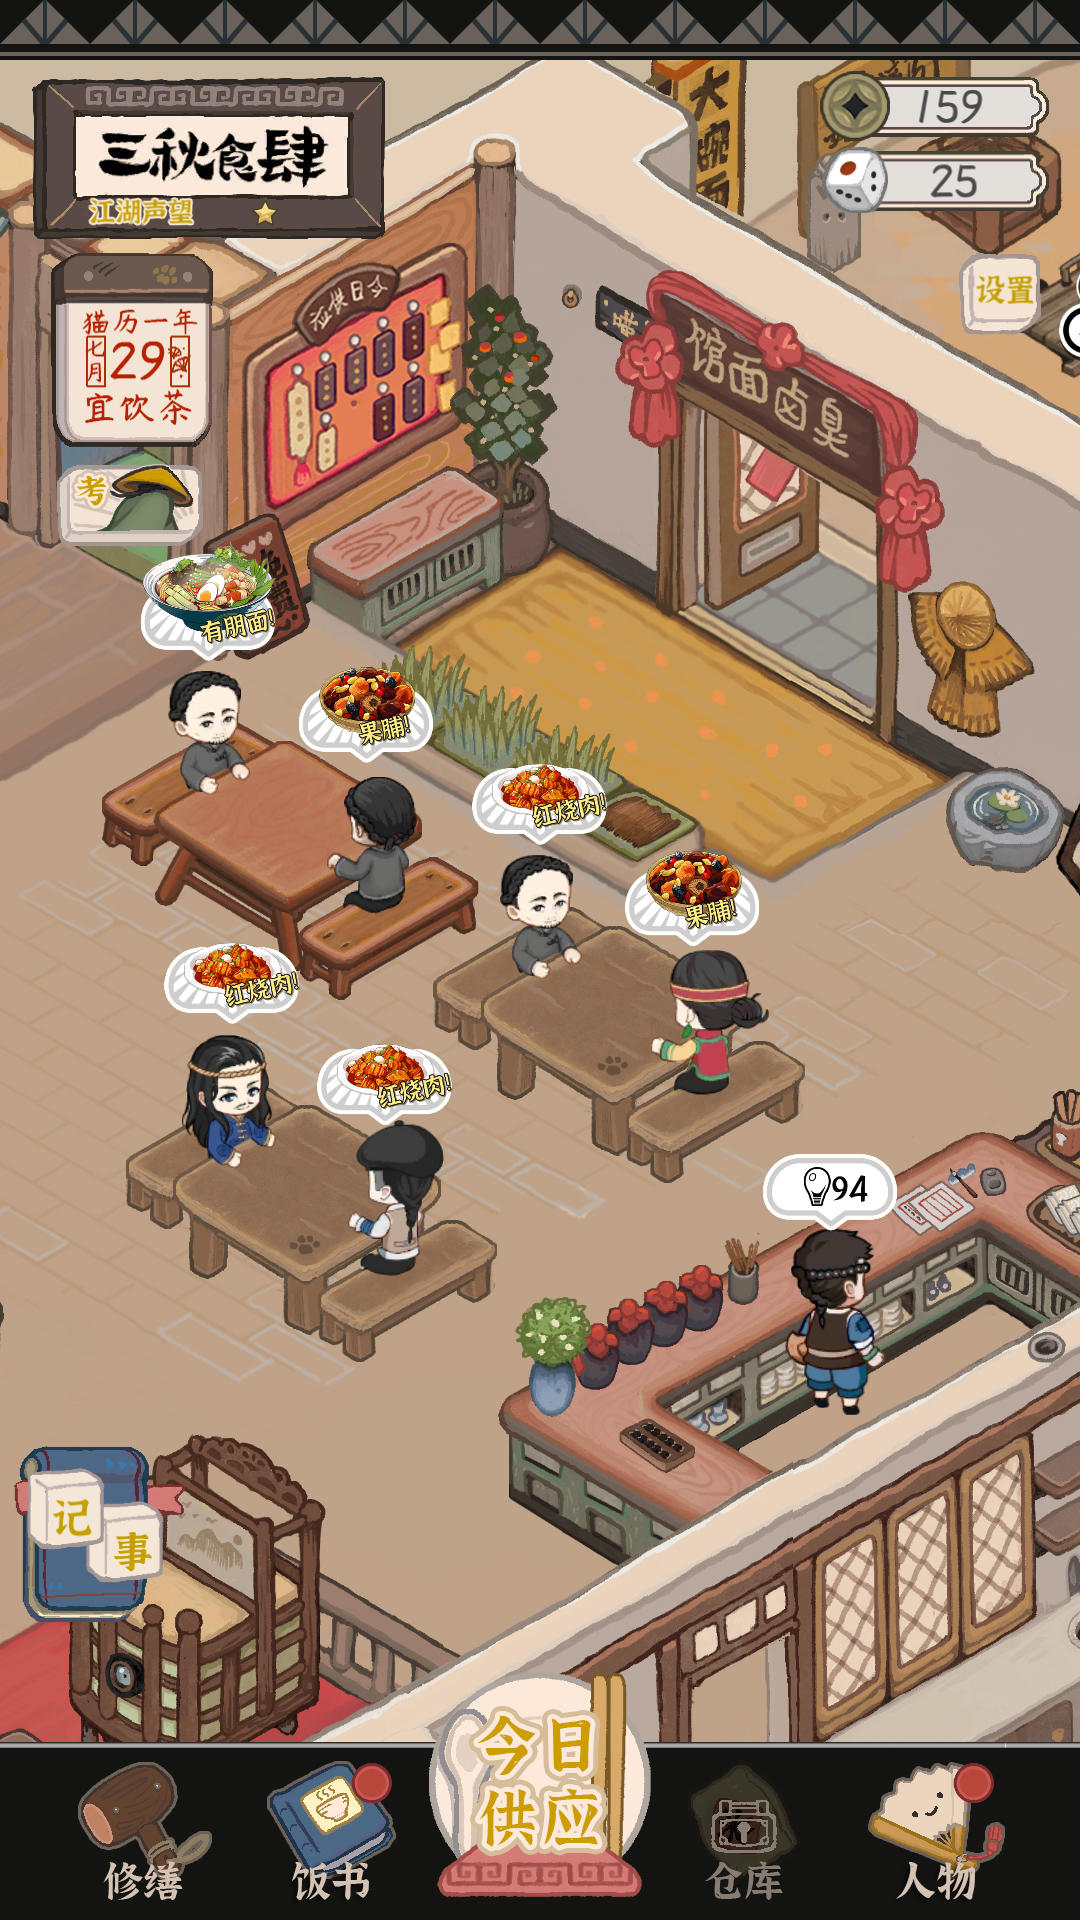 Screenshot 1 of ร้านอาหารซานชิว 